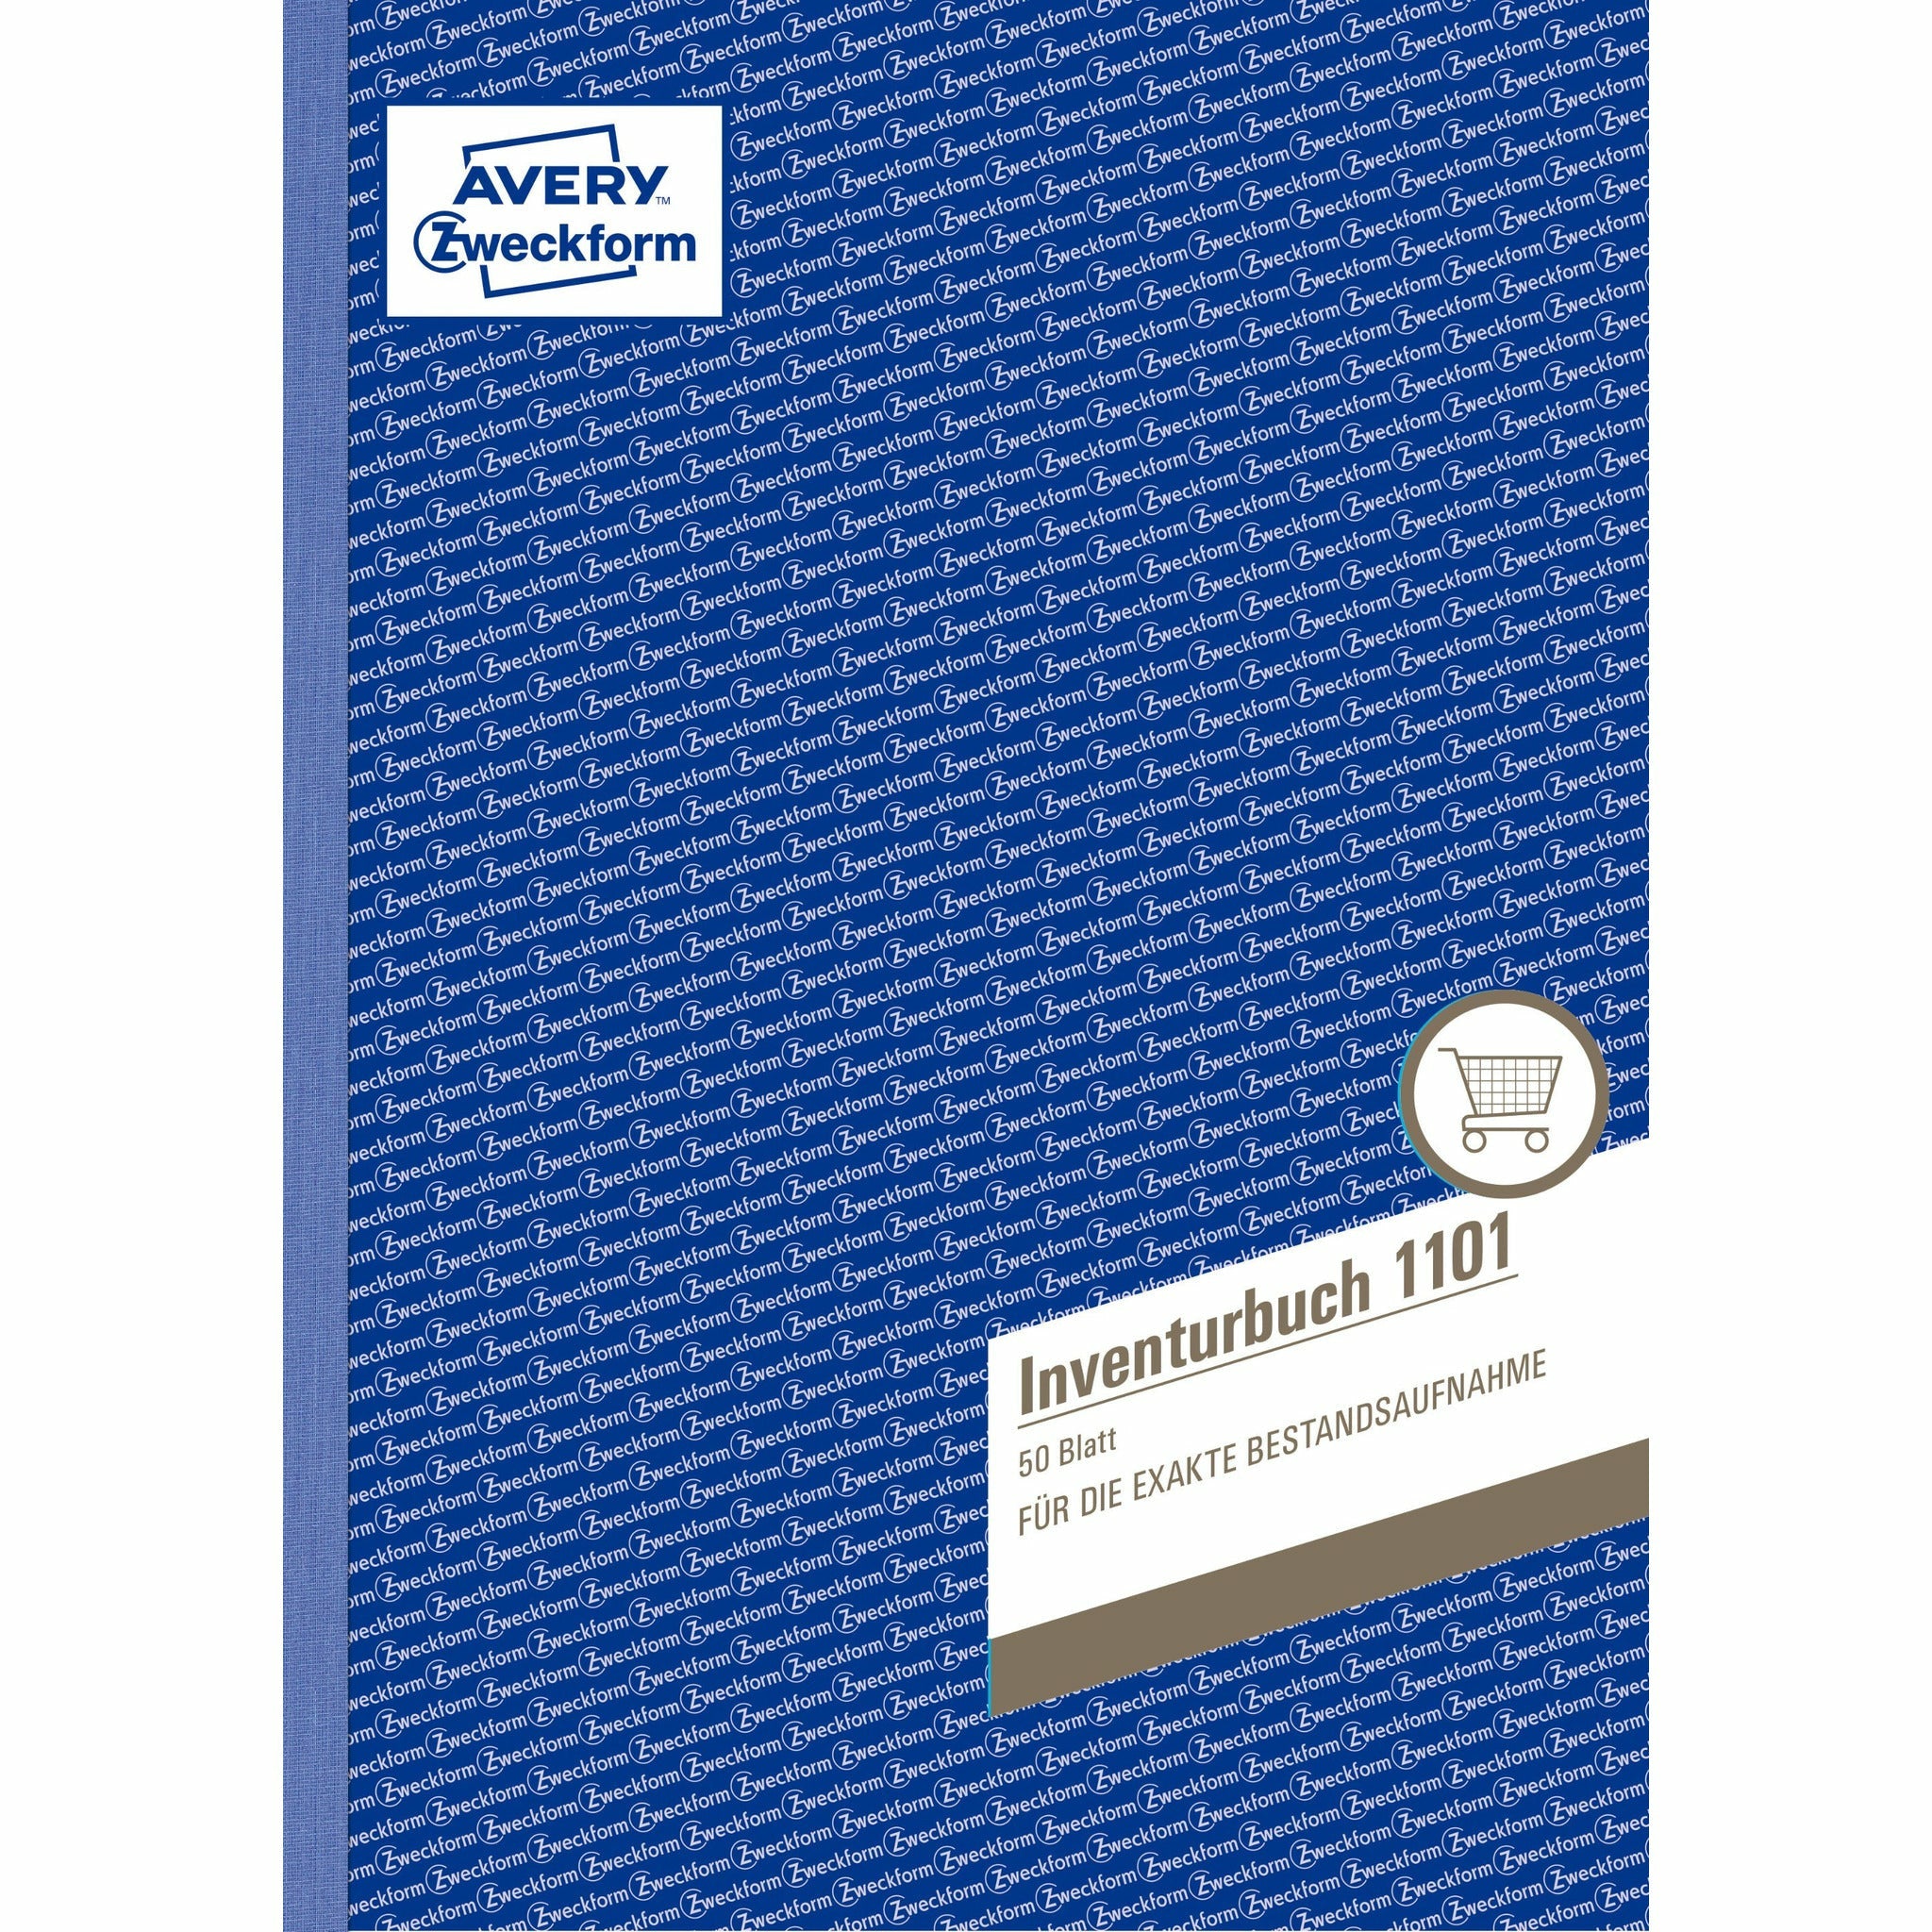 Avery-Zweckform | Inventurbuch | 1101